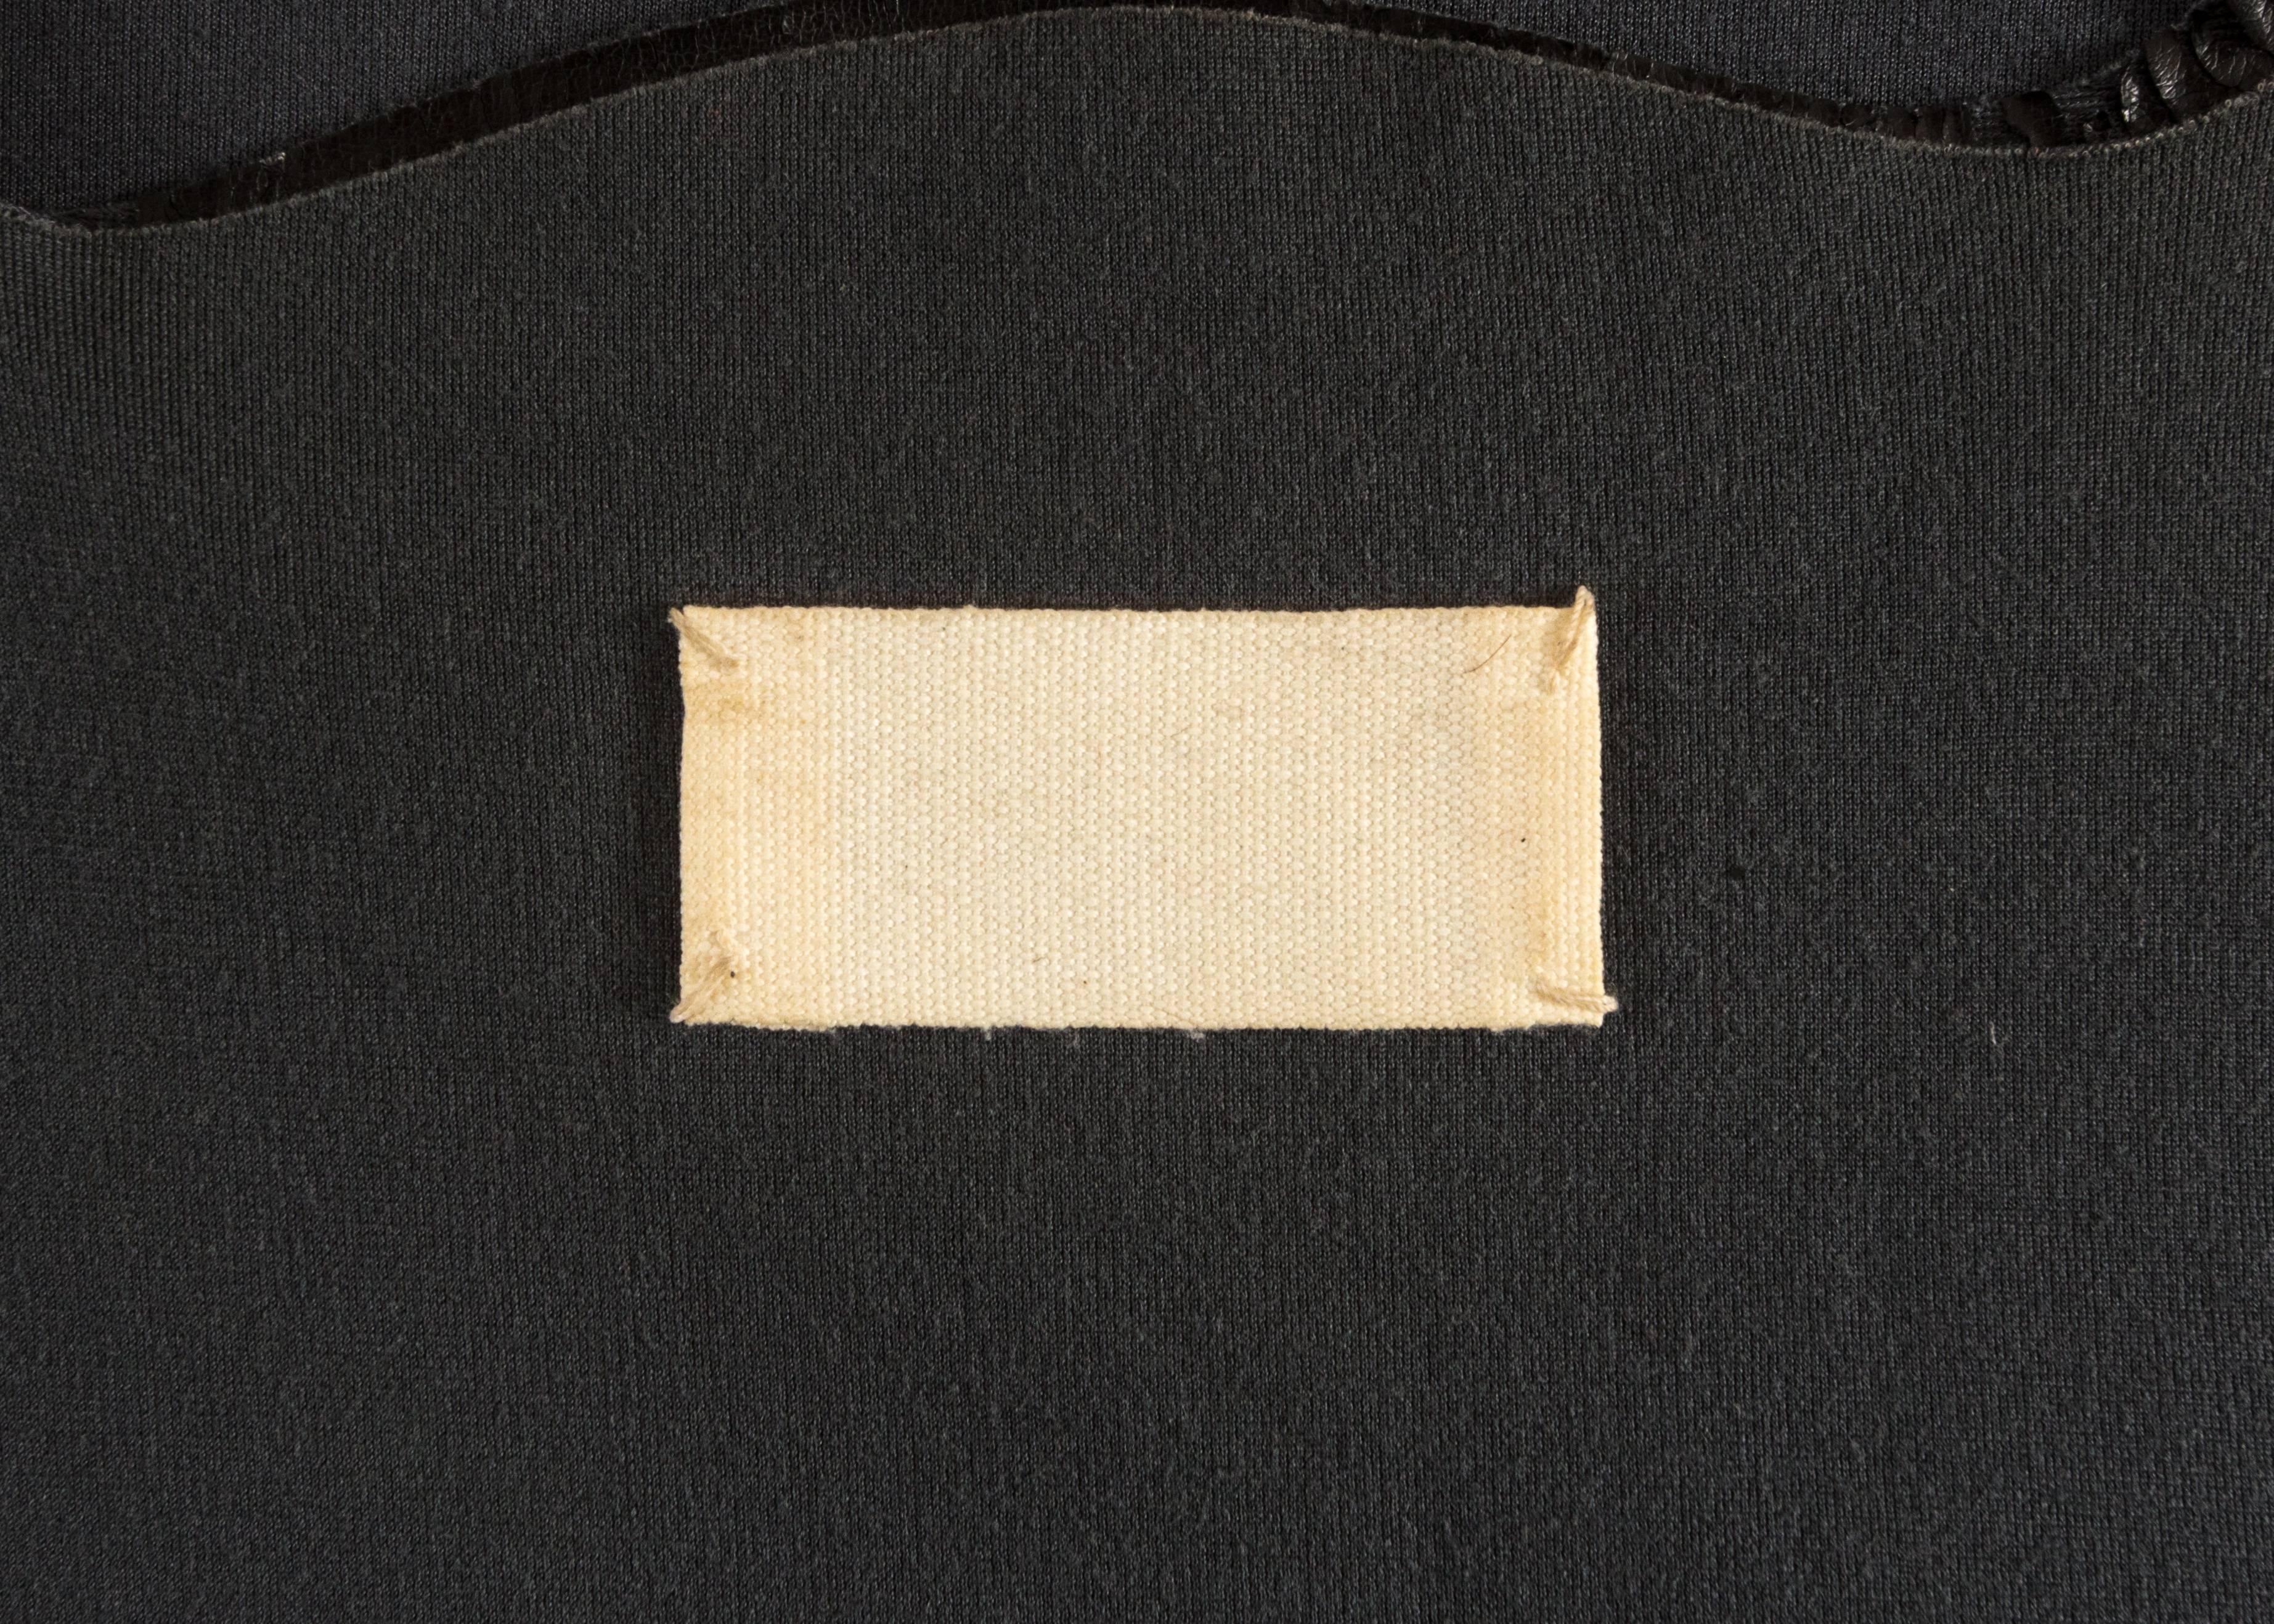 Margiela Spring-Summer 1998 faux leather paper bag vest  1